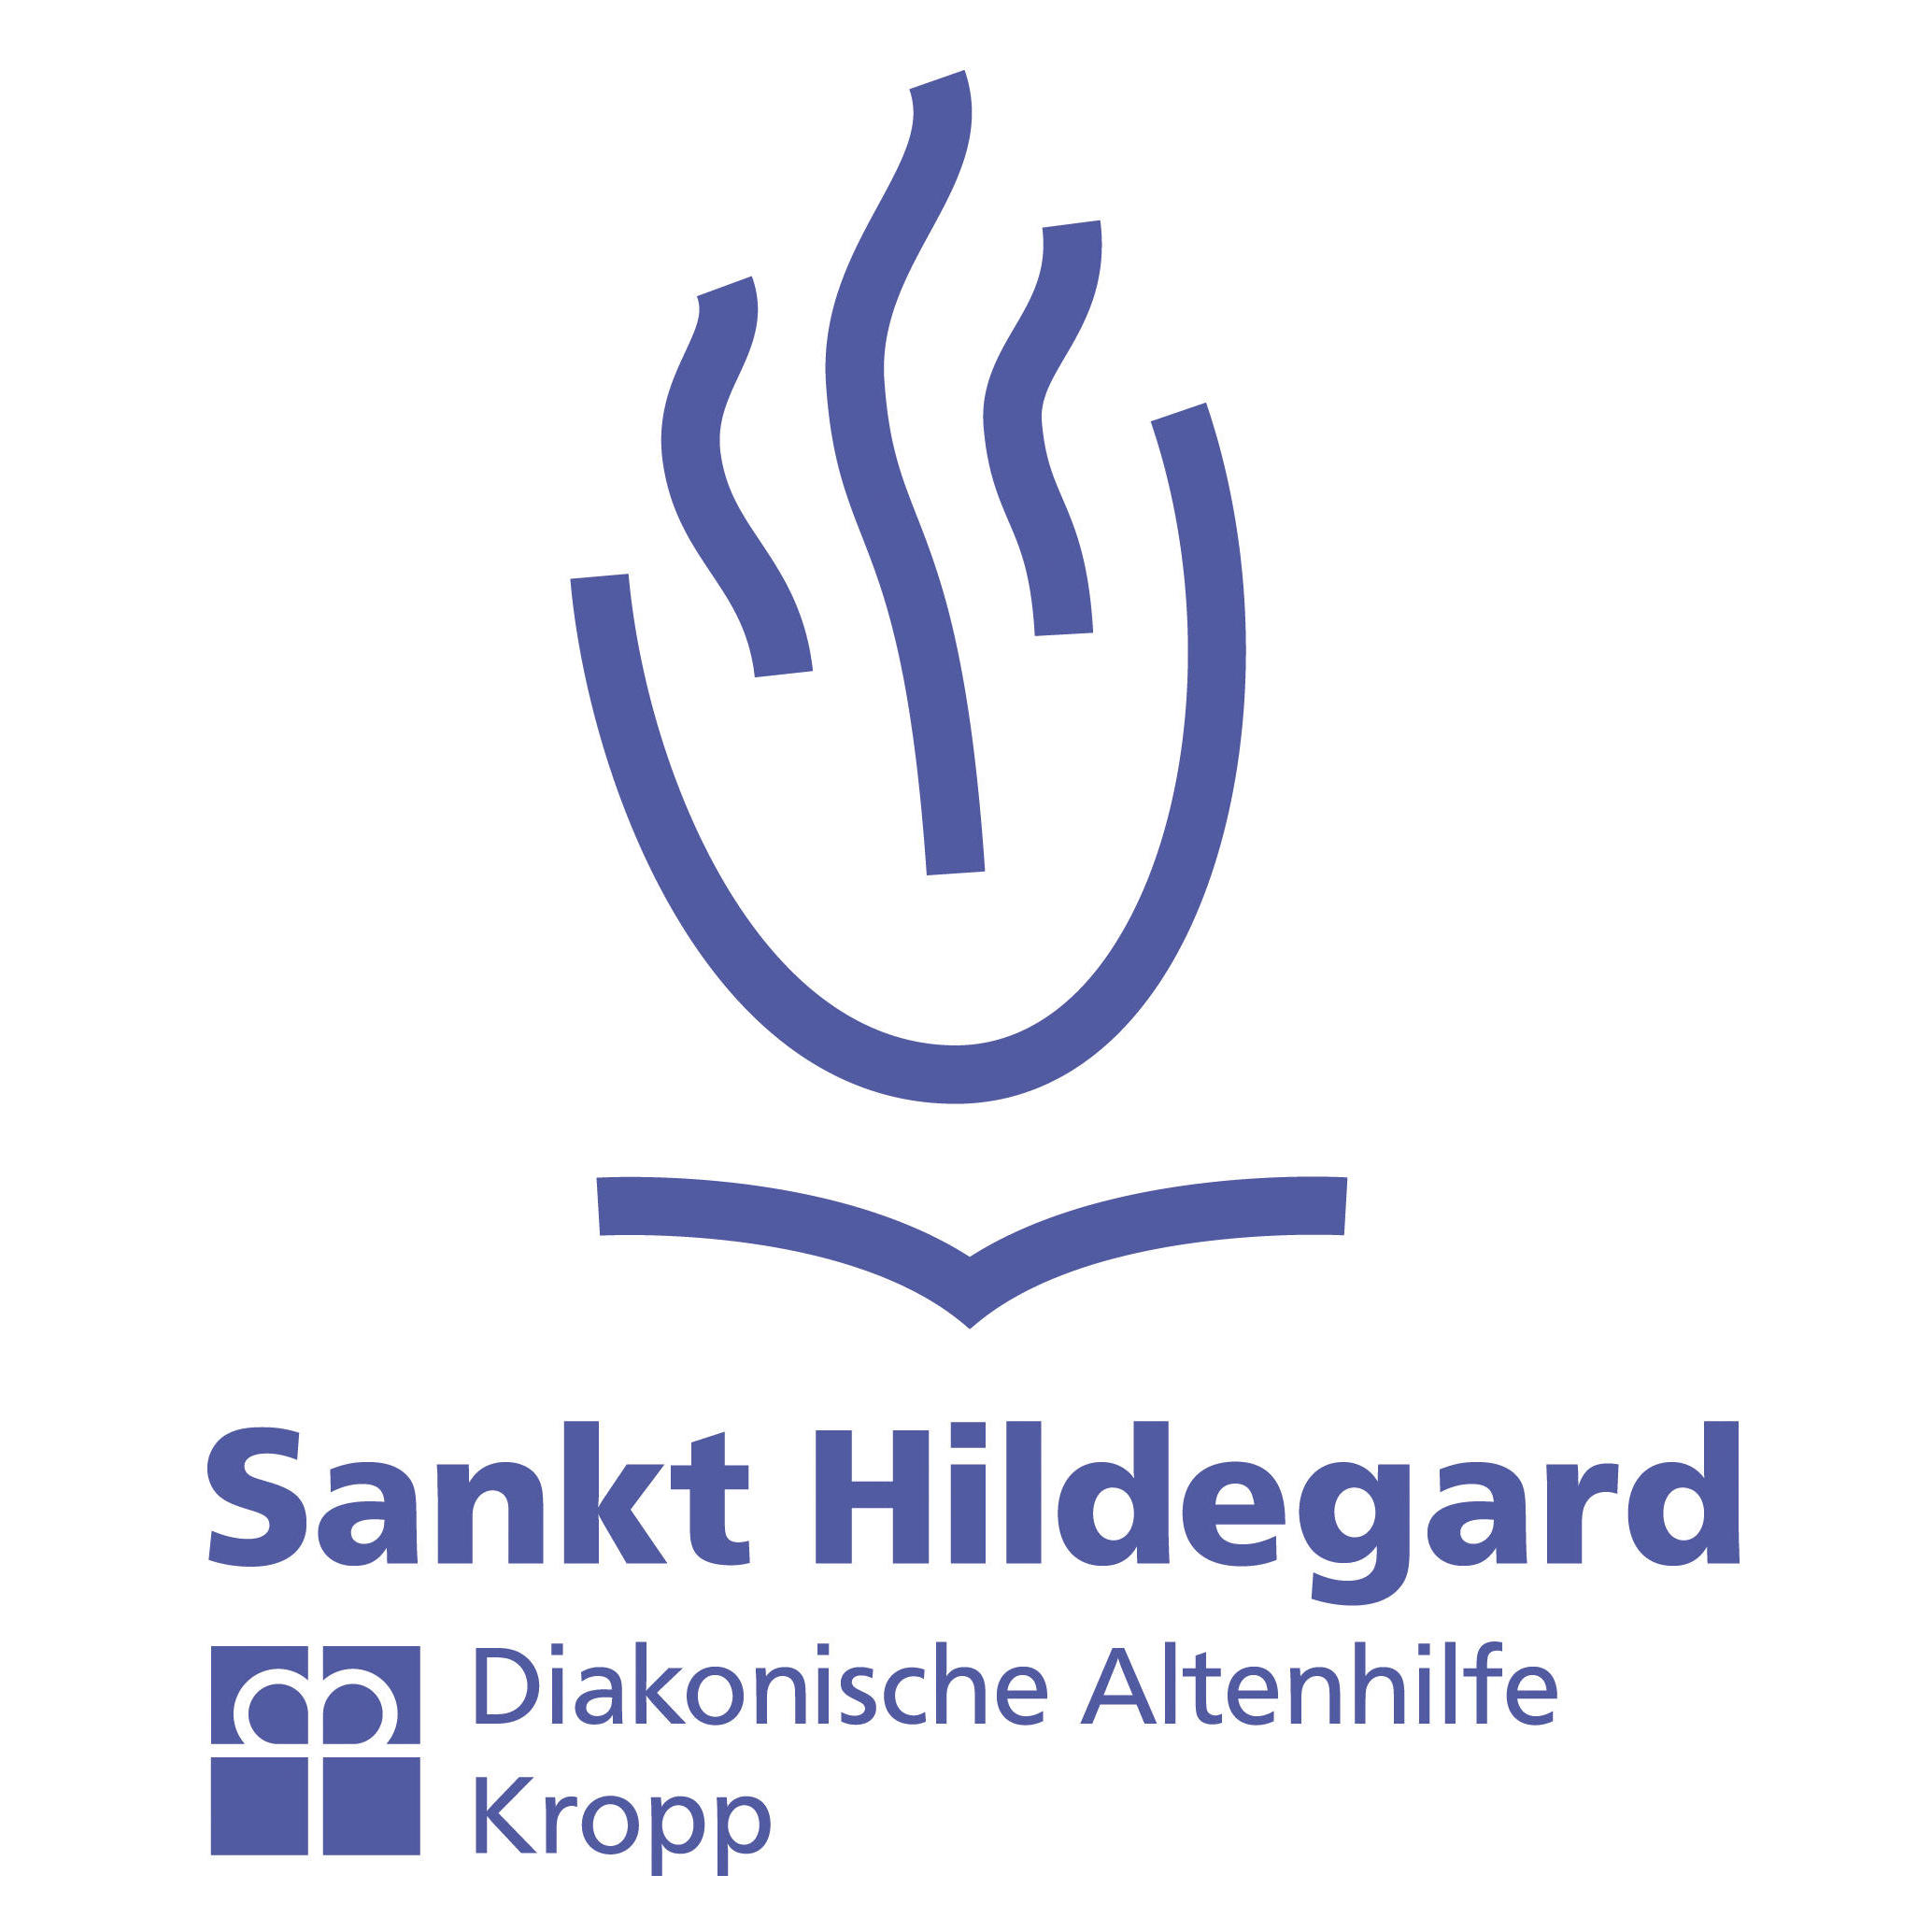 St. Hildegard Diakonische Altenhilfe Kropp gemeinnützige GmbH in Kropp - Logo